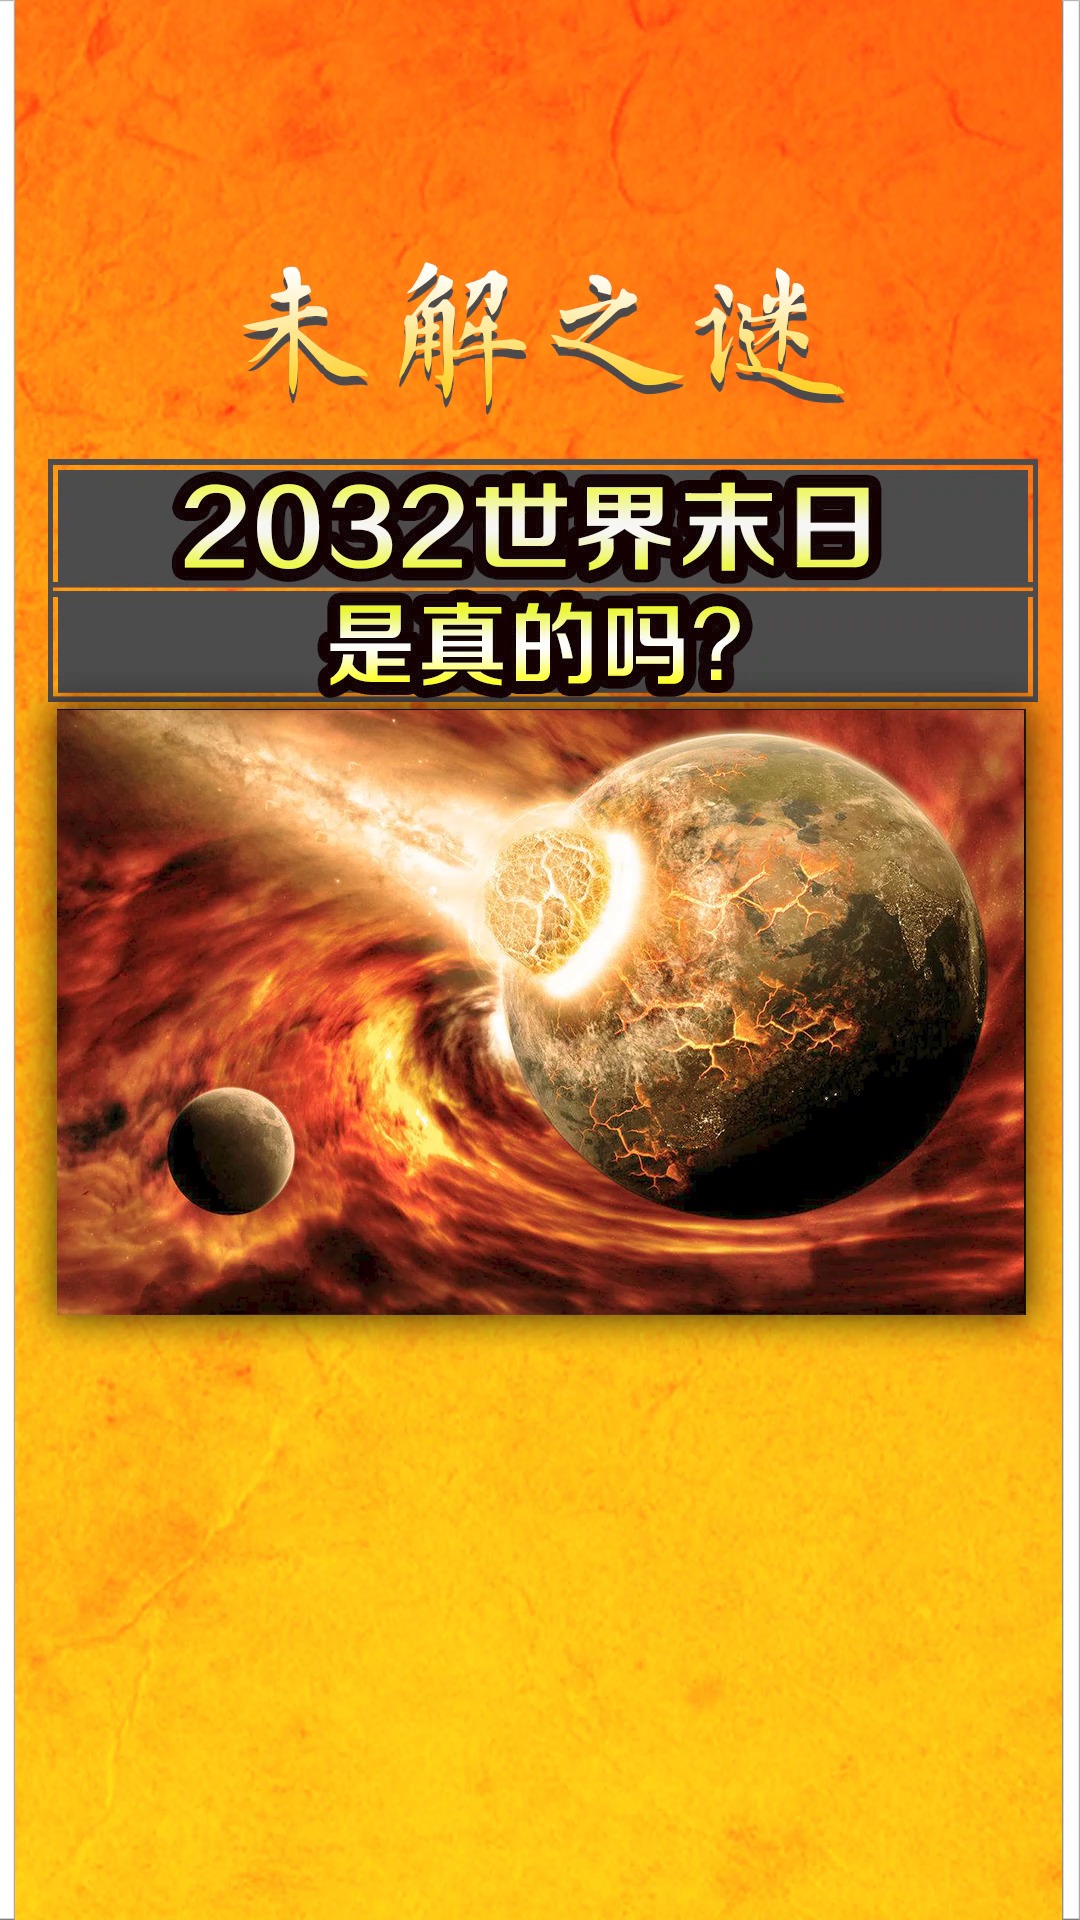 2032年世界末日是真的吗?